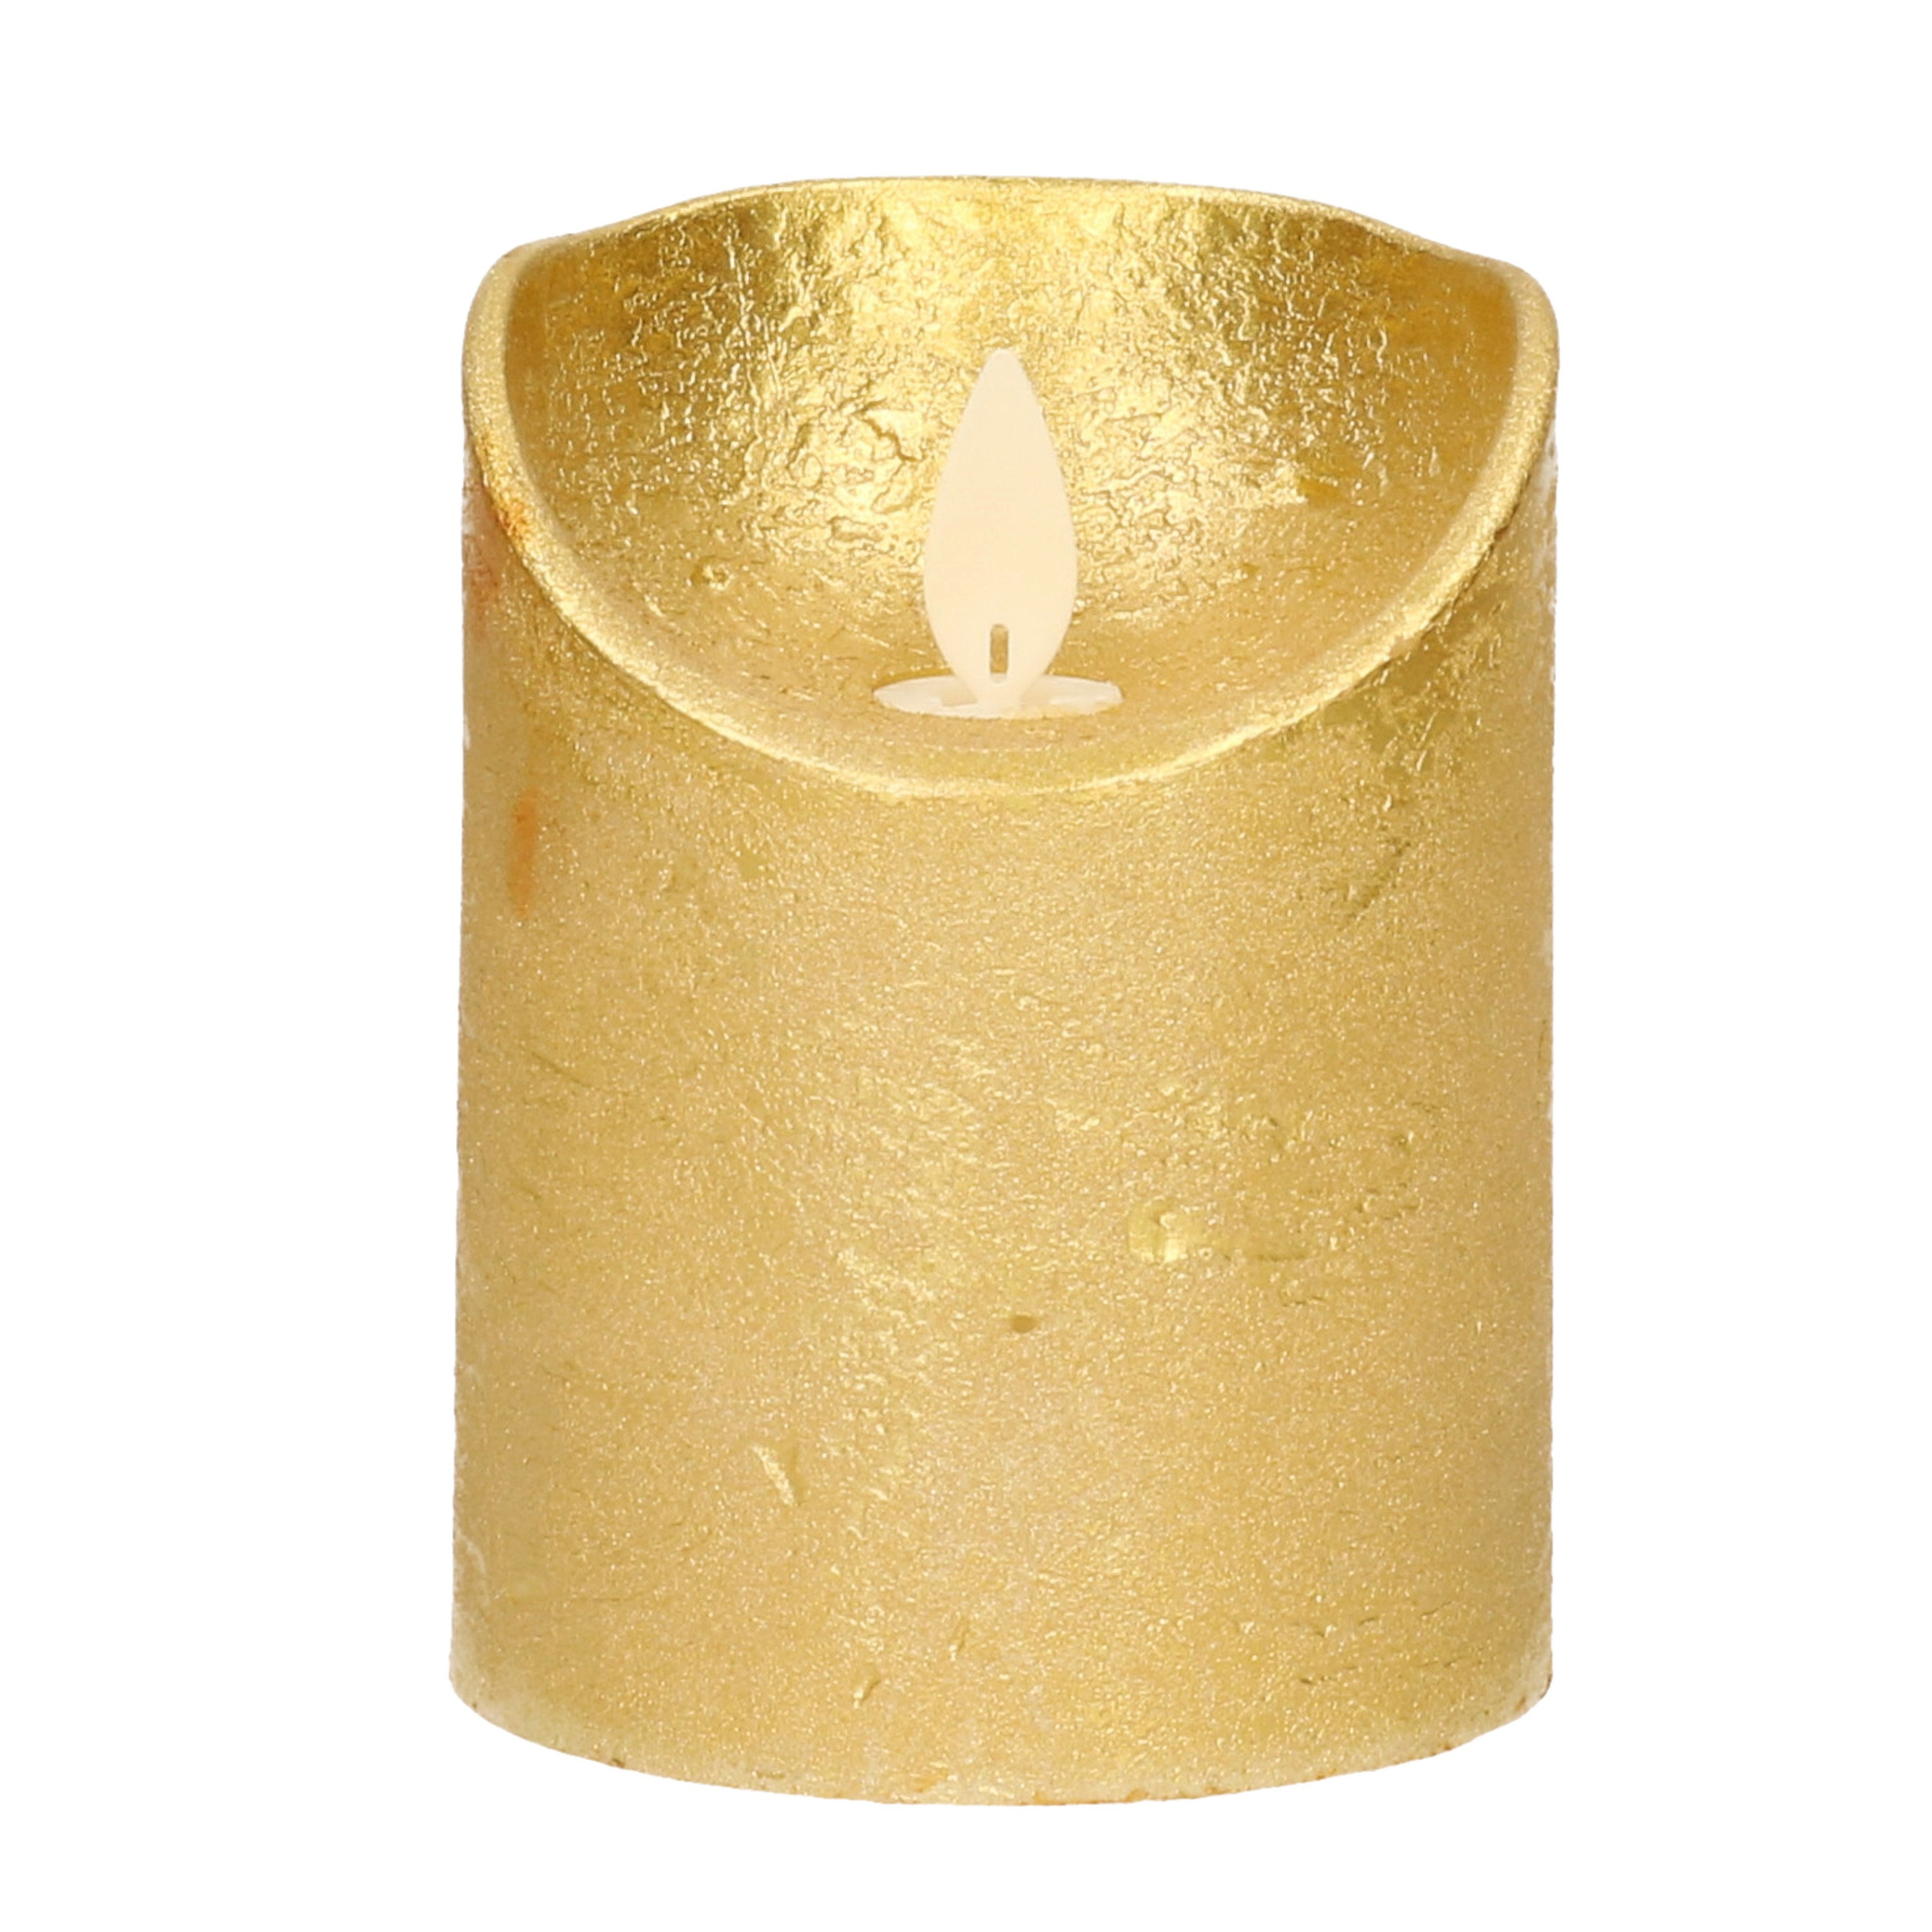 1x Gouden LED kaarsen stompkaarsen met bewegende vlam 10 cm